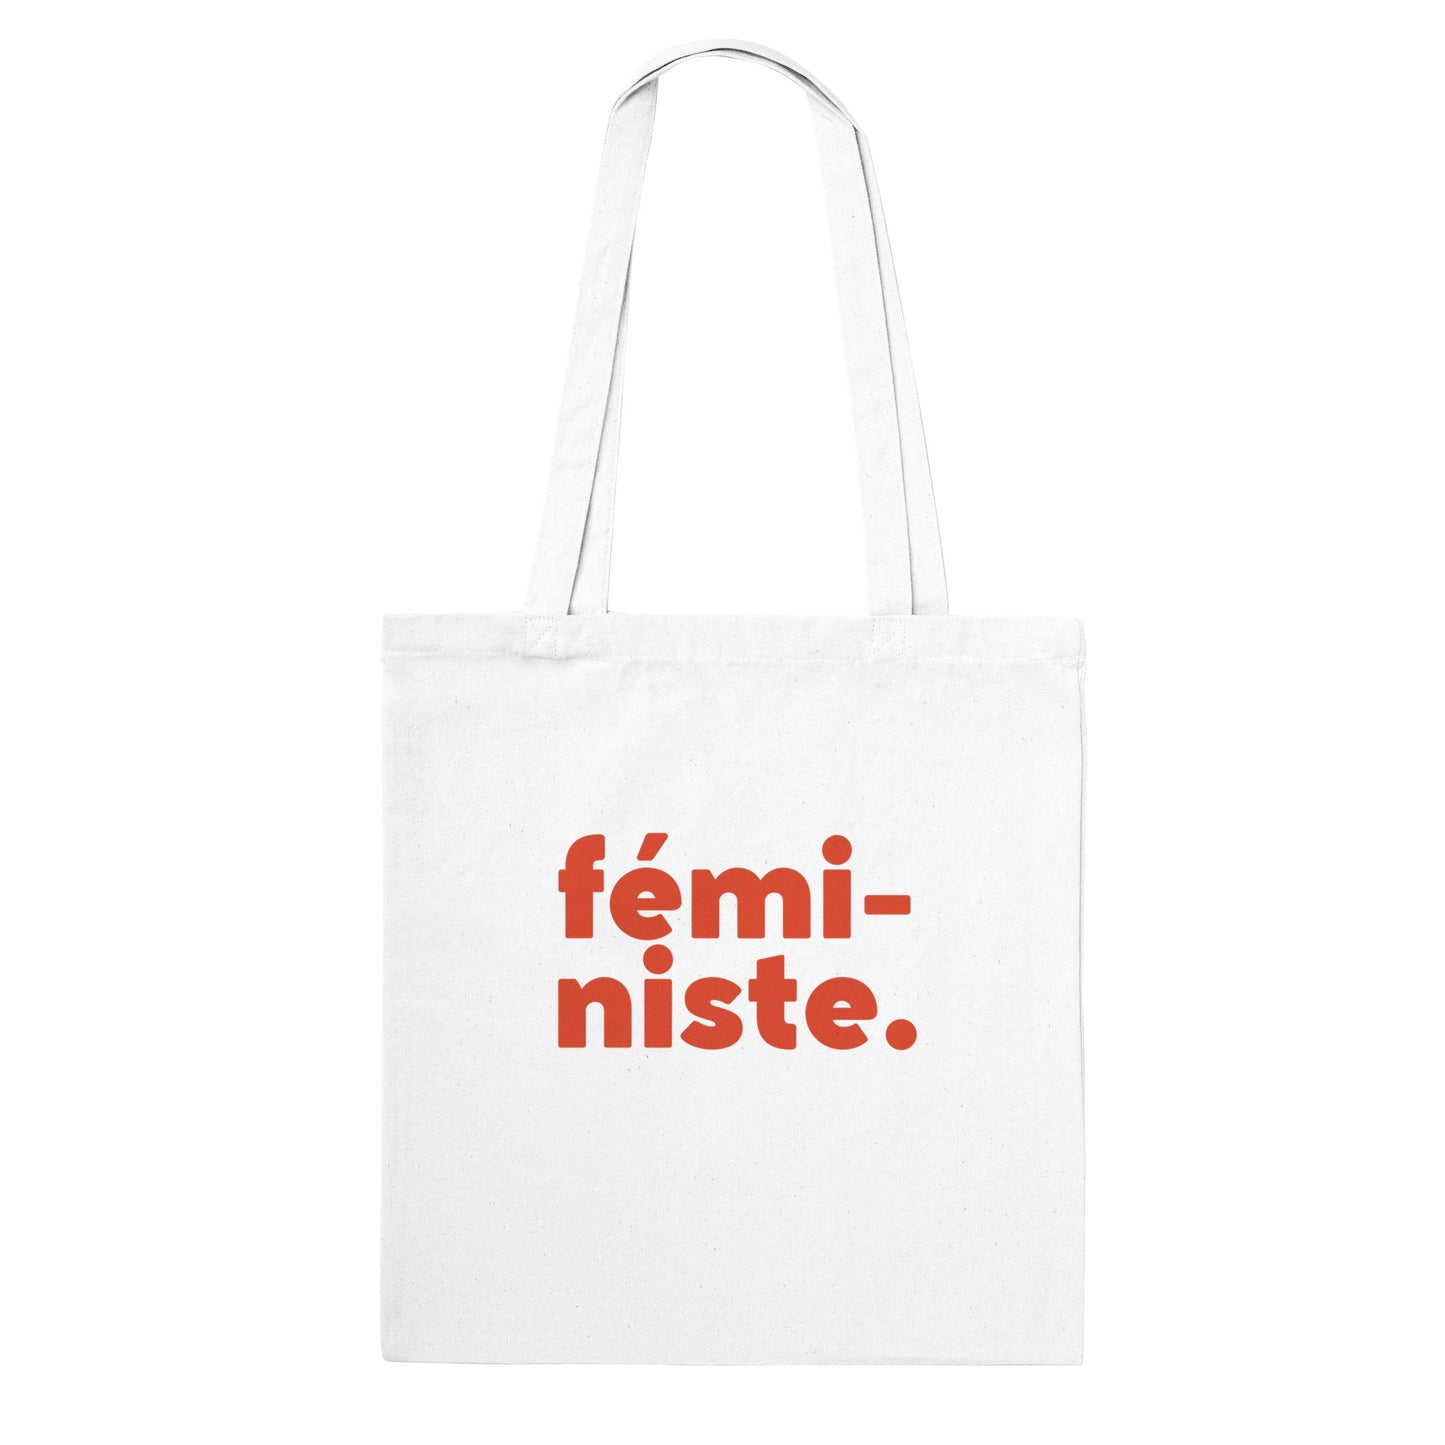 Feministe. Classic Tote Bag